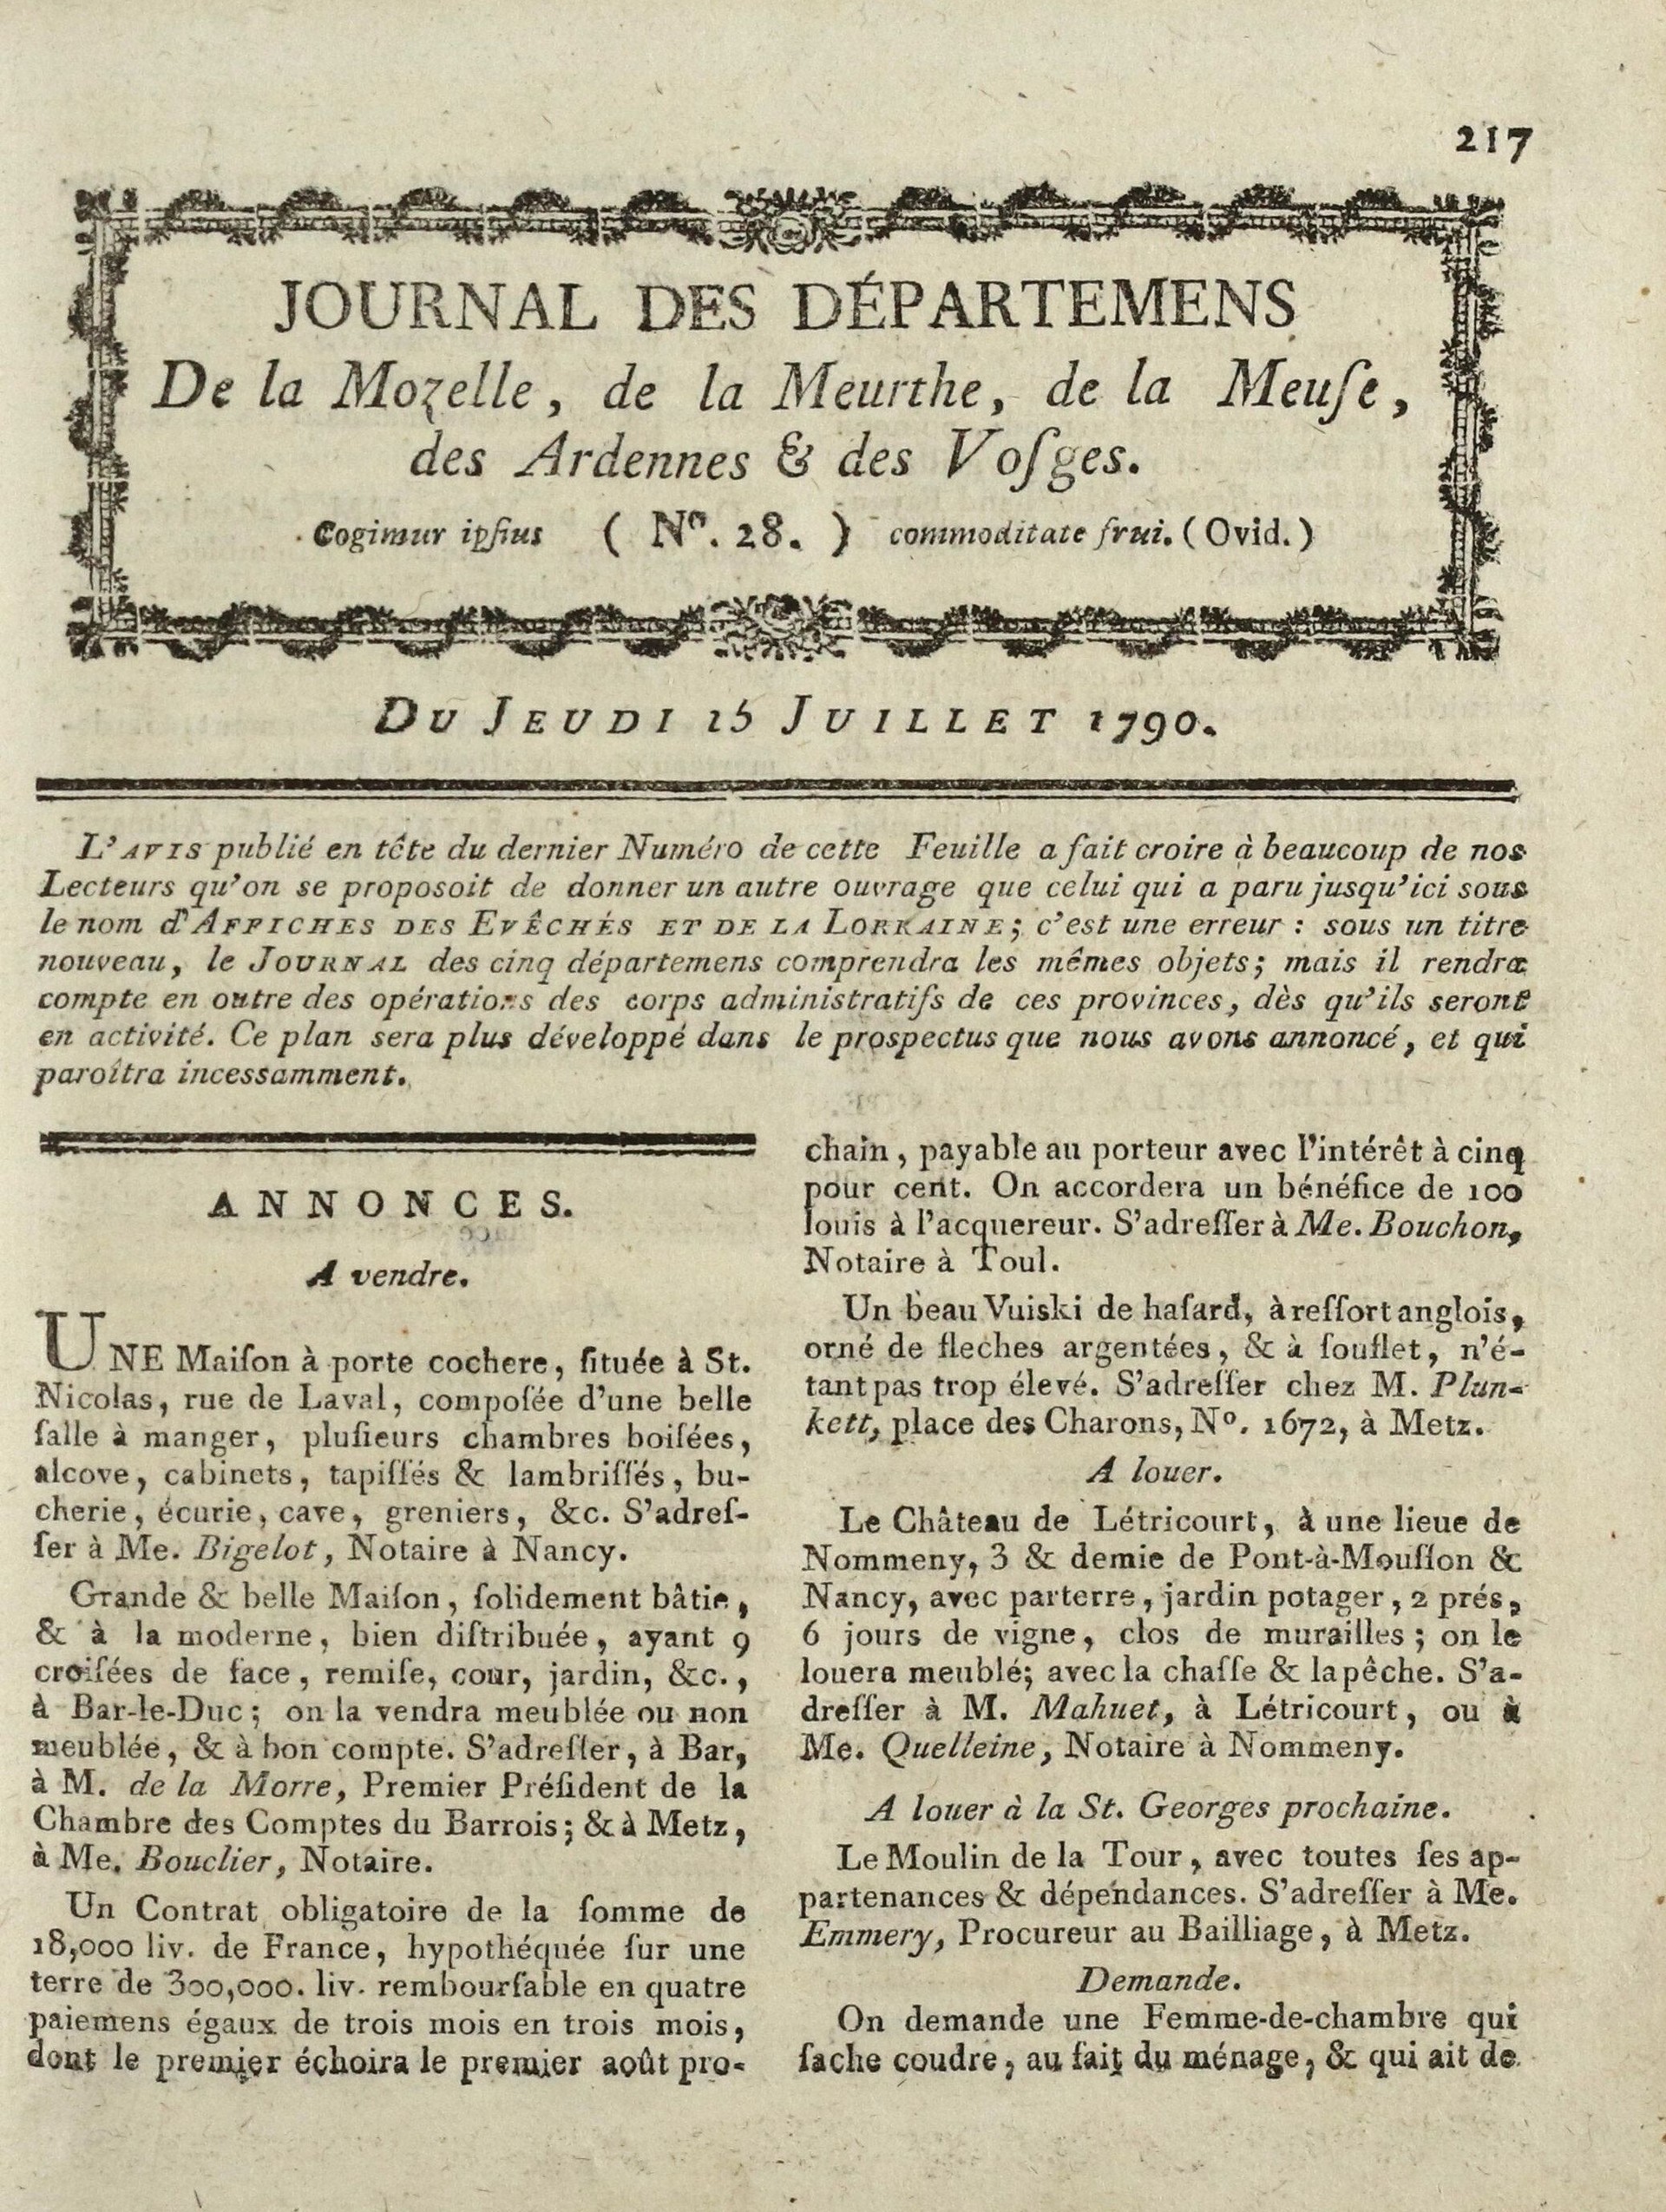 Journal des départements de la Moselle, de la Meurthe, de la Meuse, des Ardennes et des Vosges